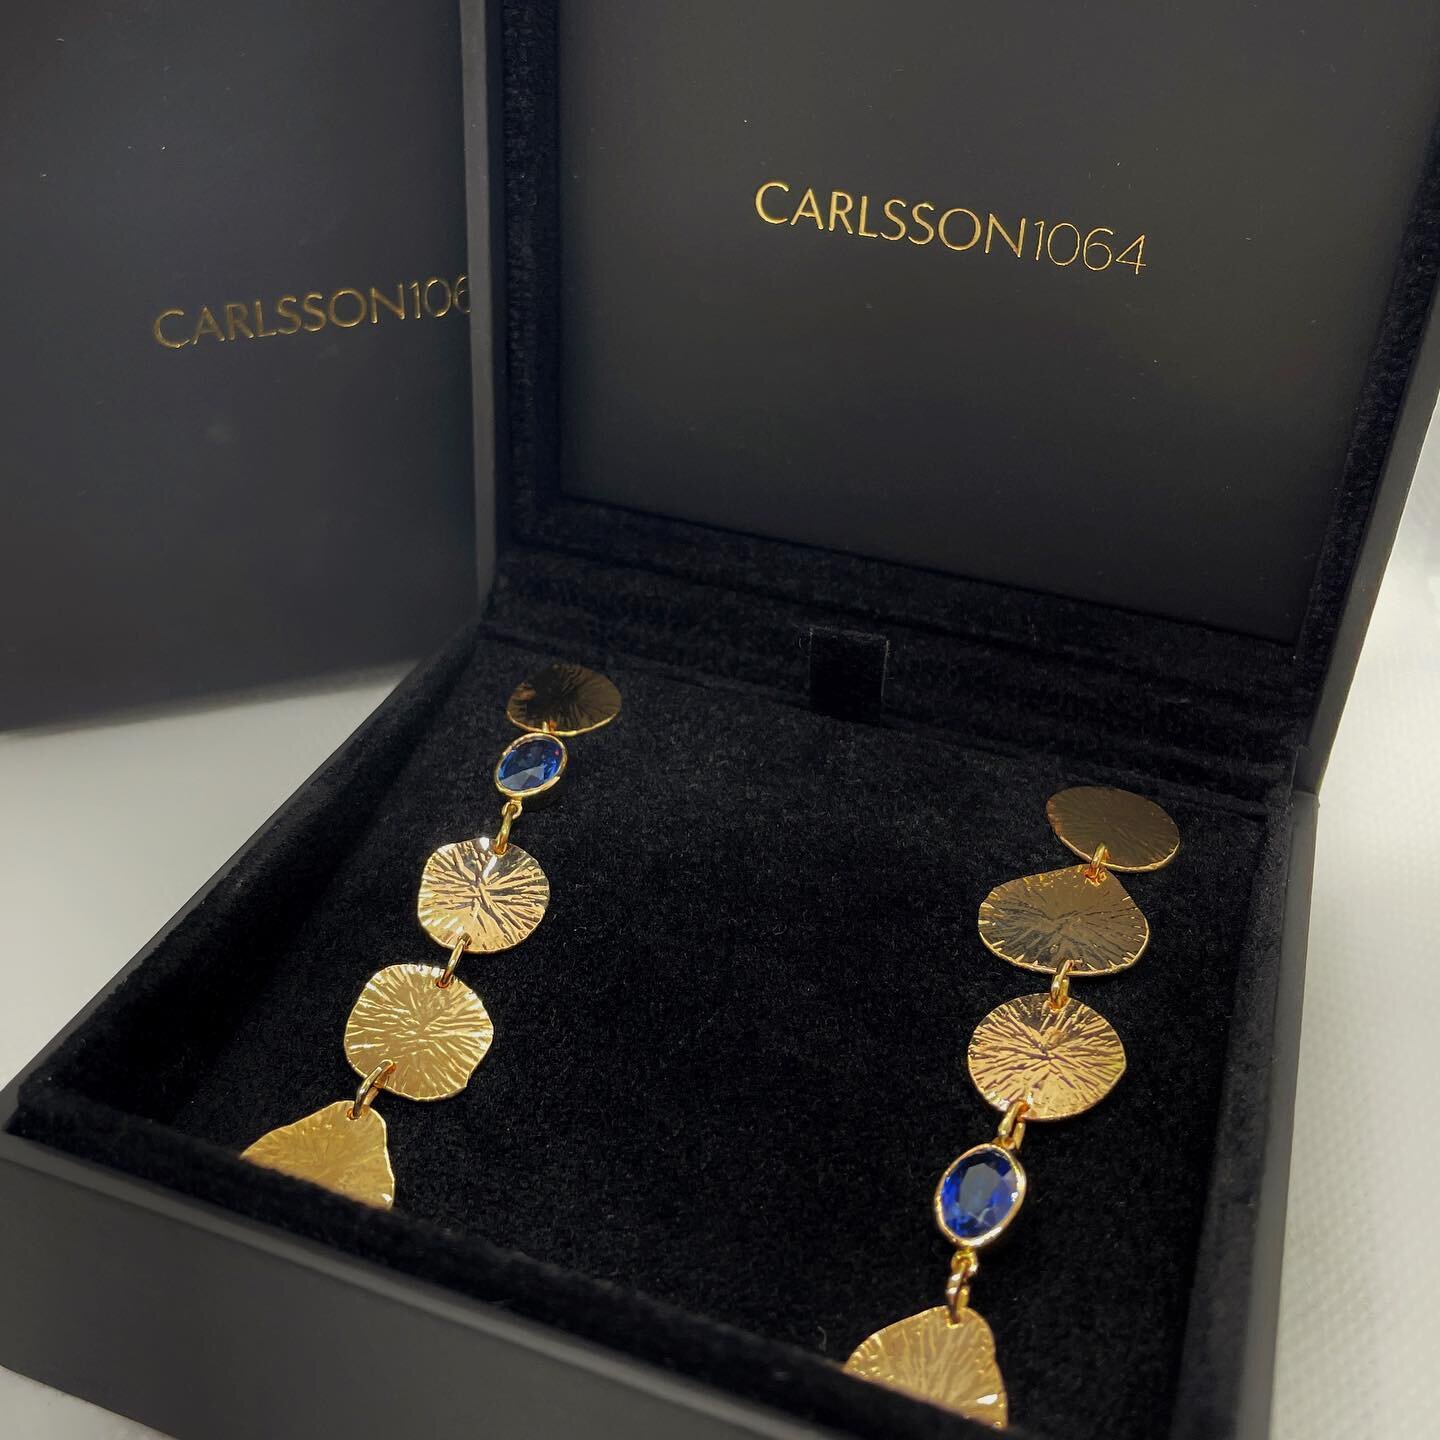 Heirloom repurposed gold + Sri Lankan Sapphires = The Honeymoon earrings 💙